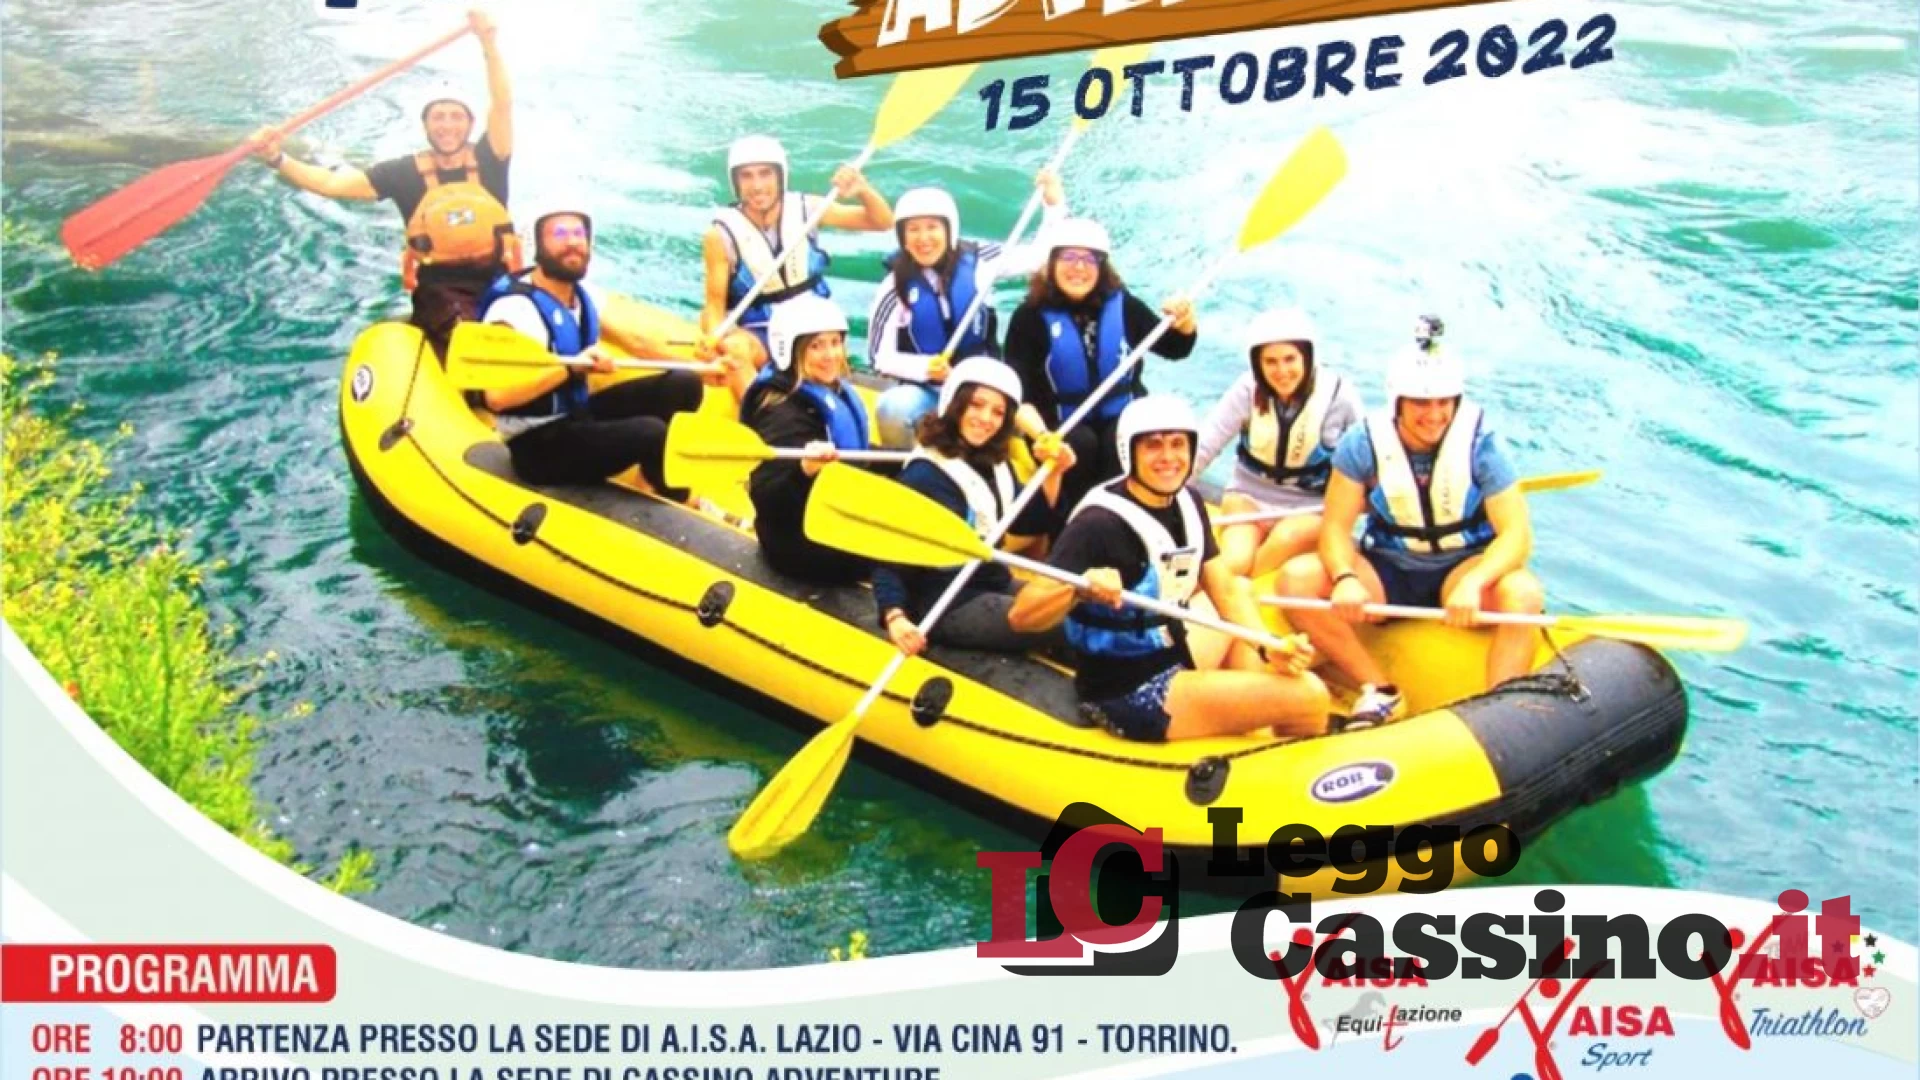 Sport e disabilità, l’AISA Lazio porta tutti all’Inclusive Raid Rafting “Cassino”